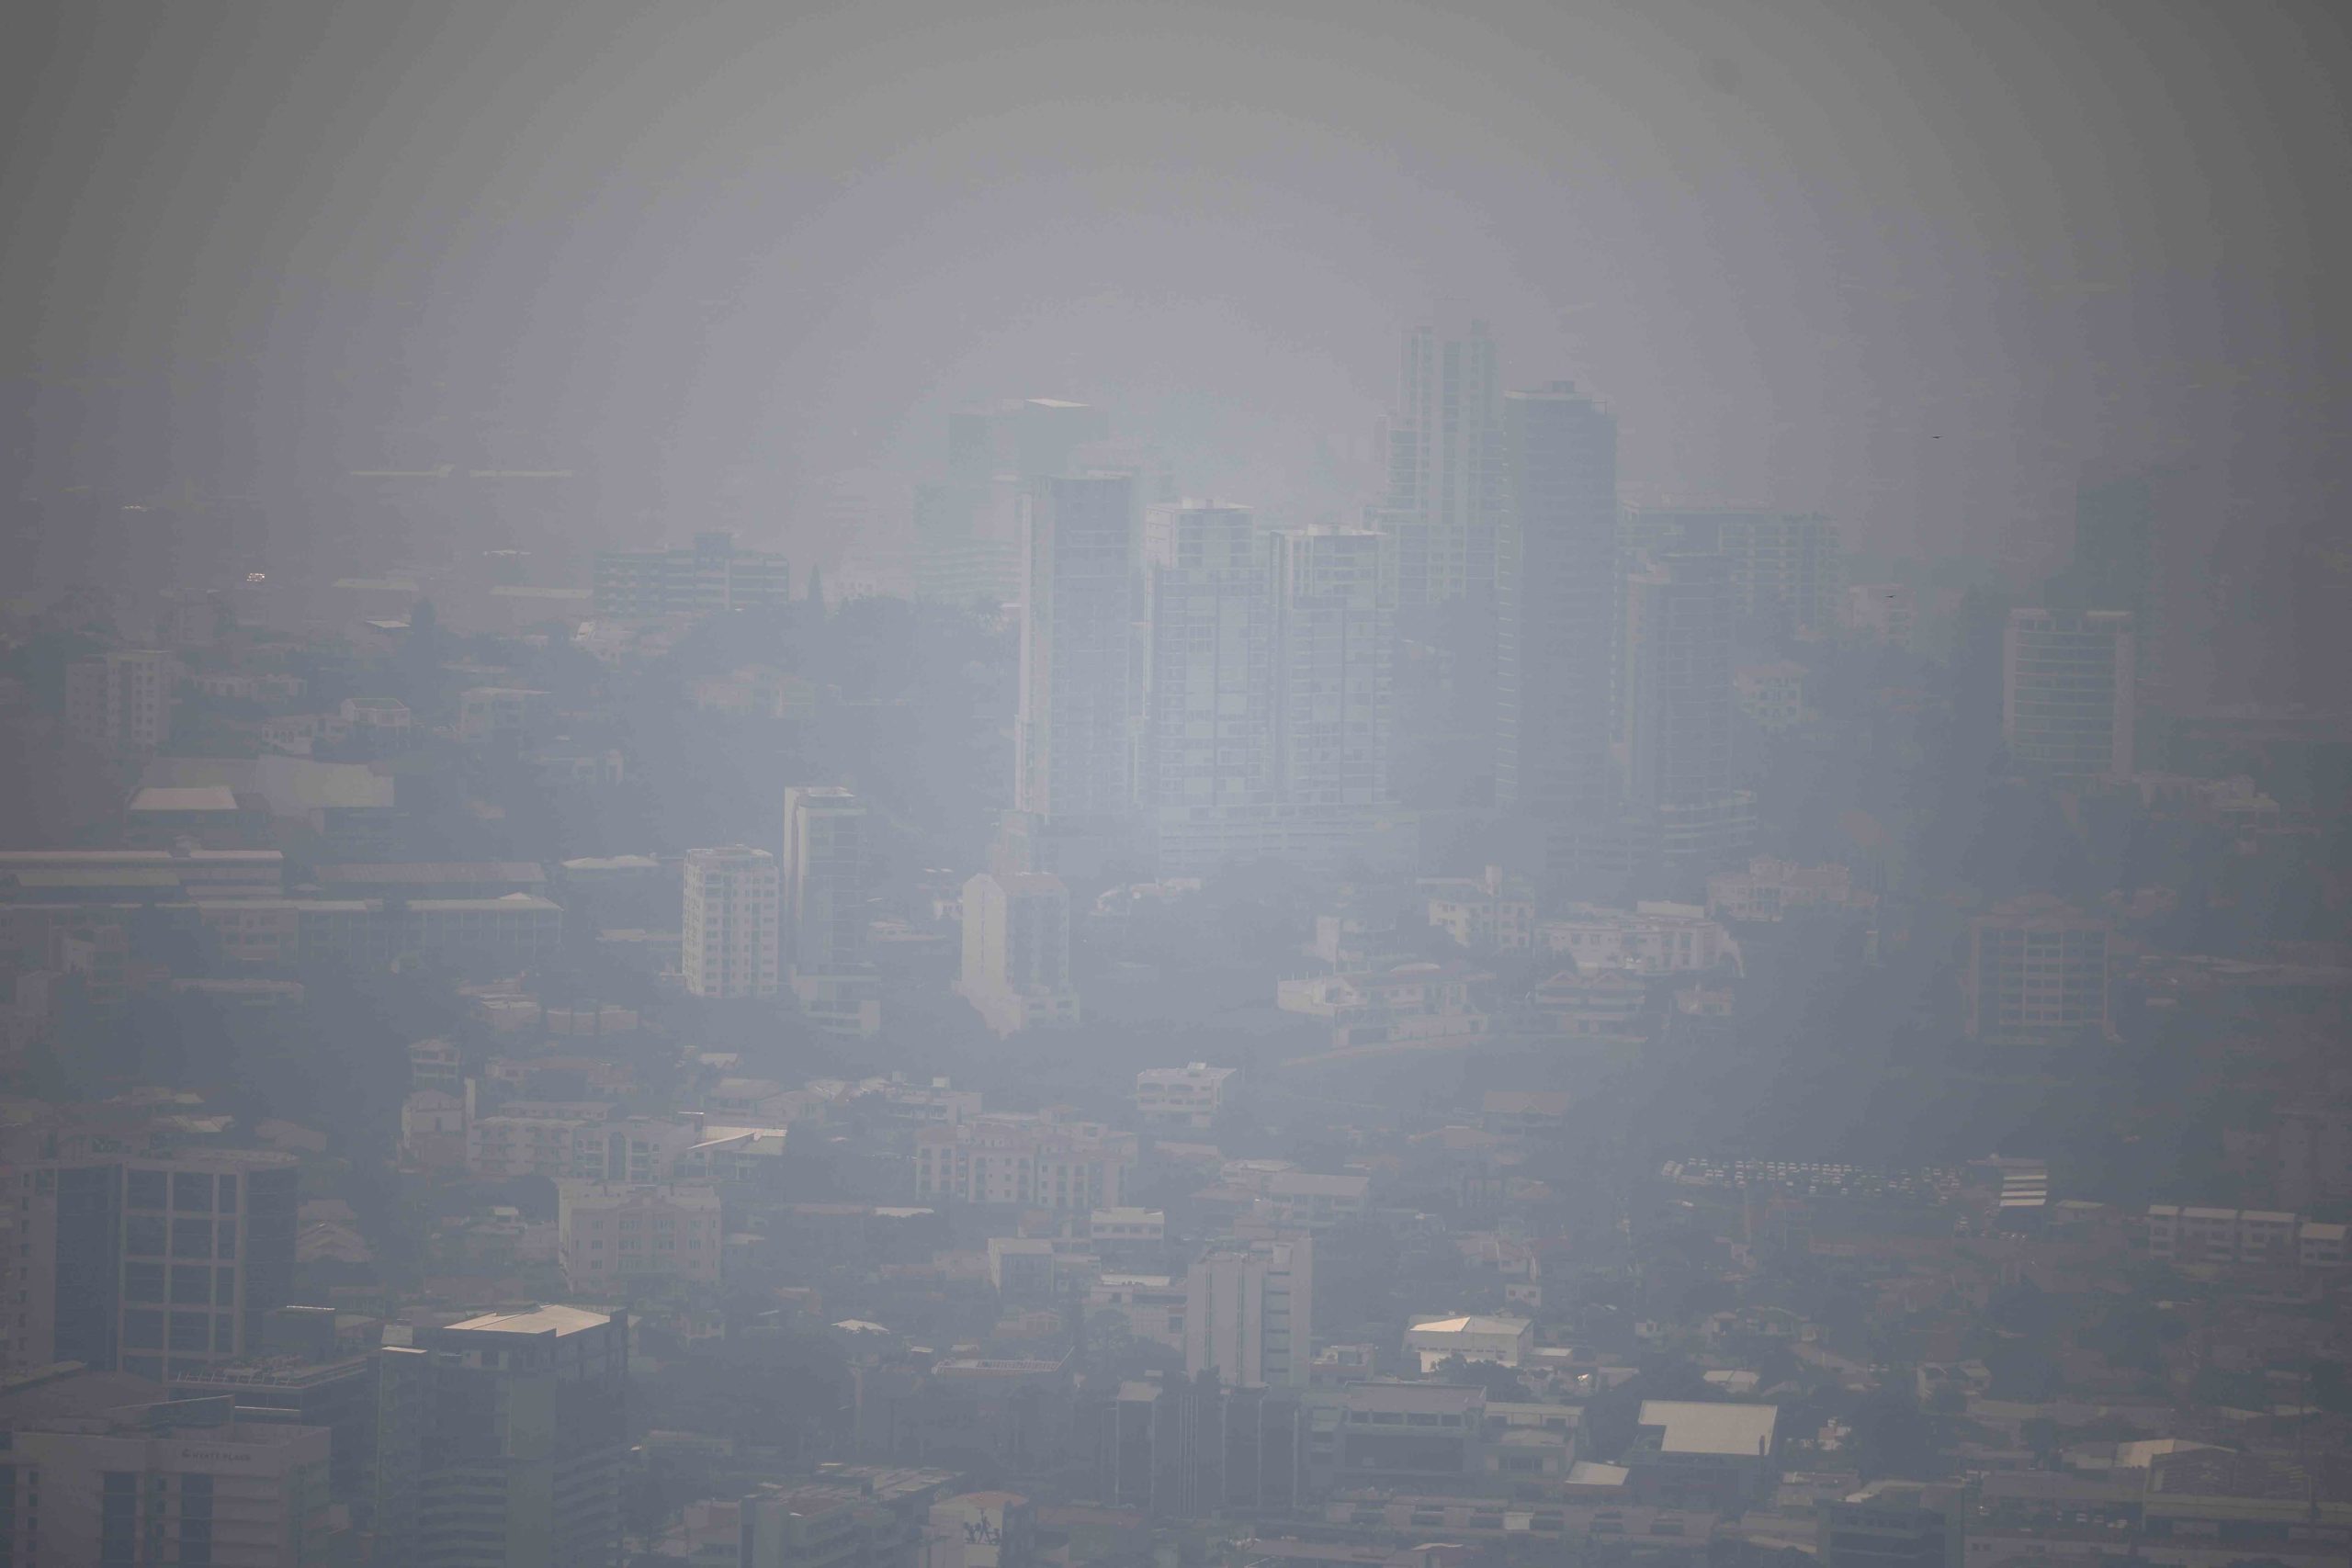 La densa capa de contaminación no permite visualizar Tegucigalpa. Foto CC/Jorge Cabrera